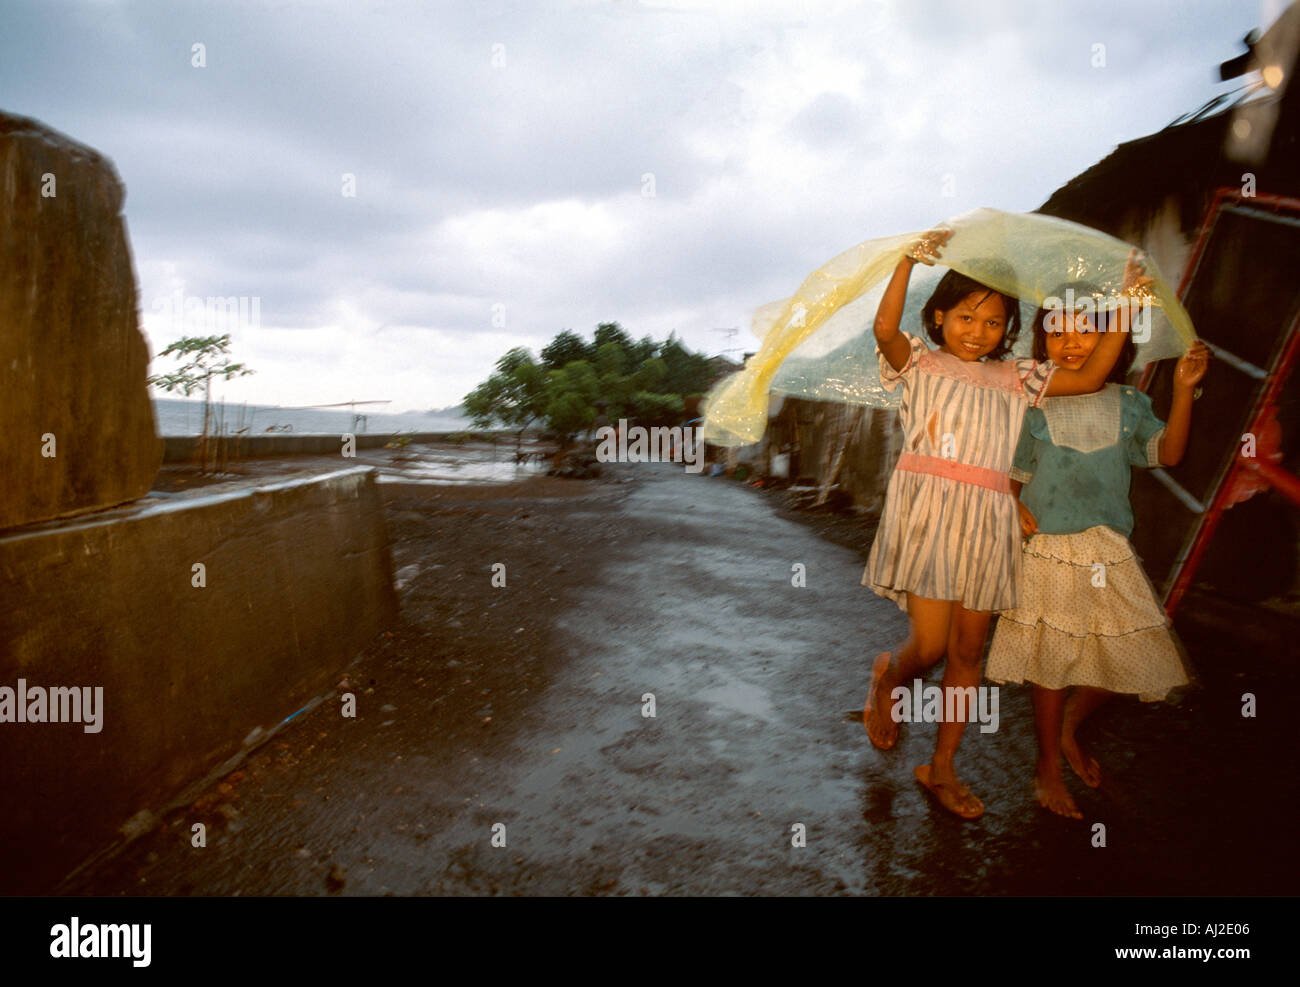 Bali-Kinder im Regen. Zwei glückliche kleine Mädchen zu Fuß in der Monsun-Regen, Regenzeit in Singaraja, Bali, Indonesien. Stockfoto